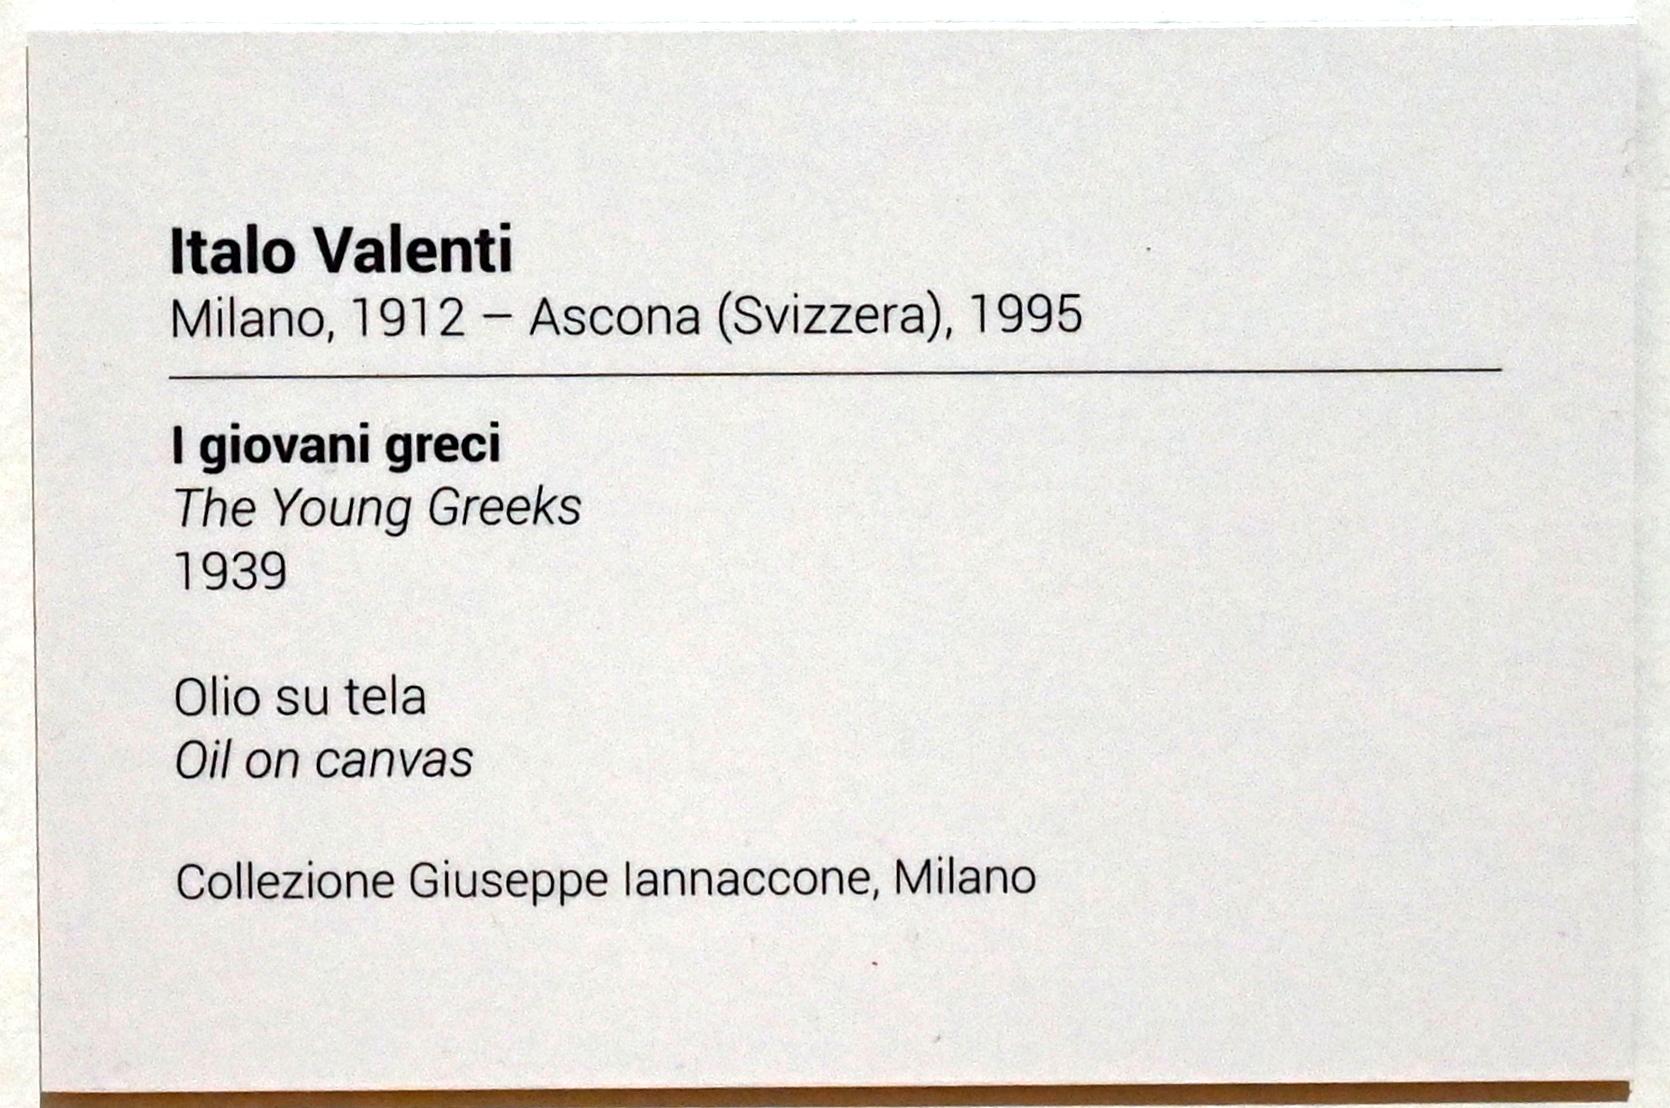 Italo Valenti (1939), Die jungen Griechen, Turin, GAM Torino, Ausstellung "Eine Reise gegen den Strom" vom 05.05.-12.09.2021, Saal 3, 1939, Bild 2/2